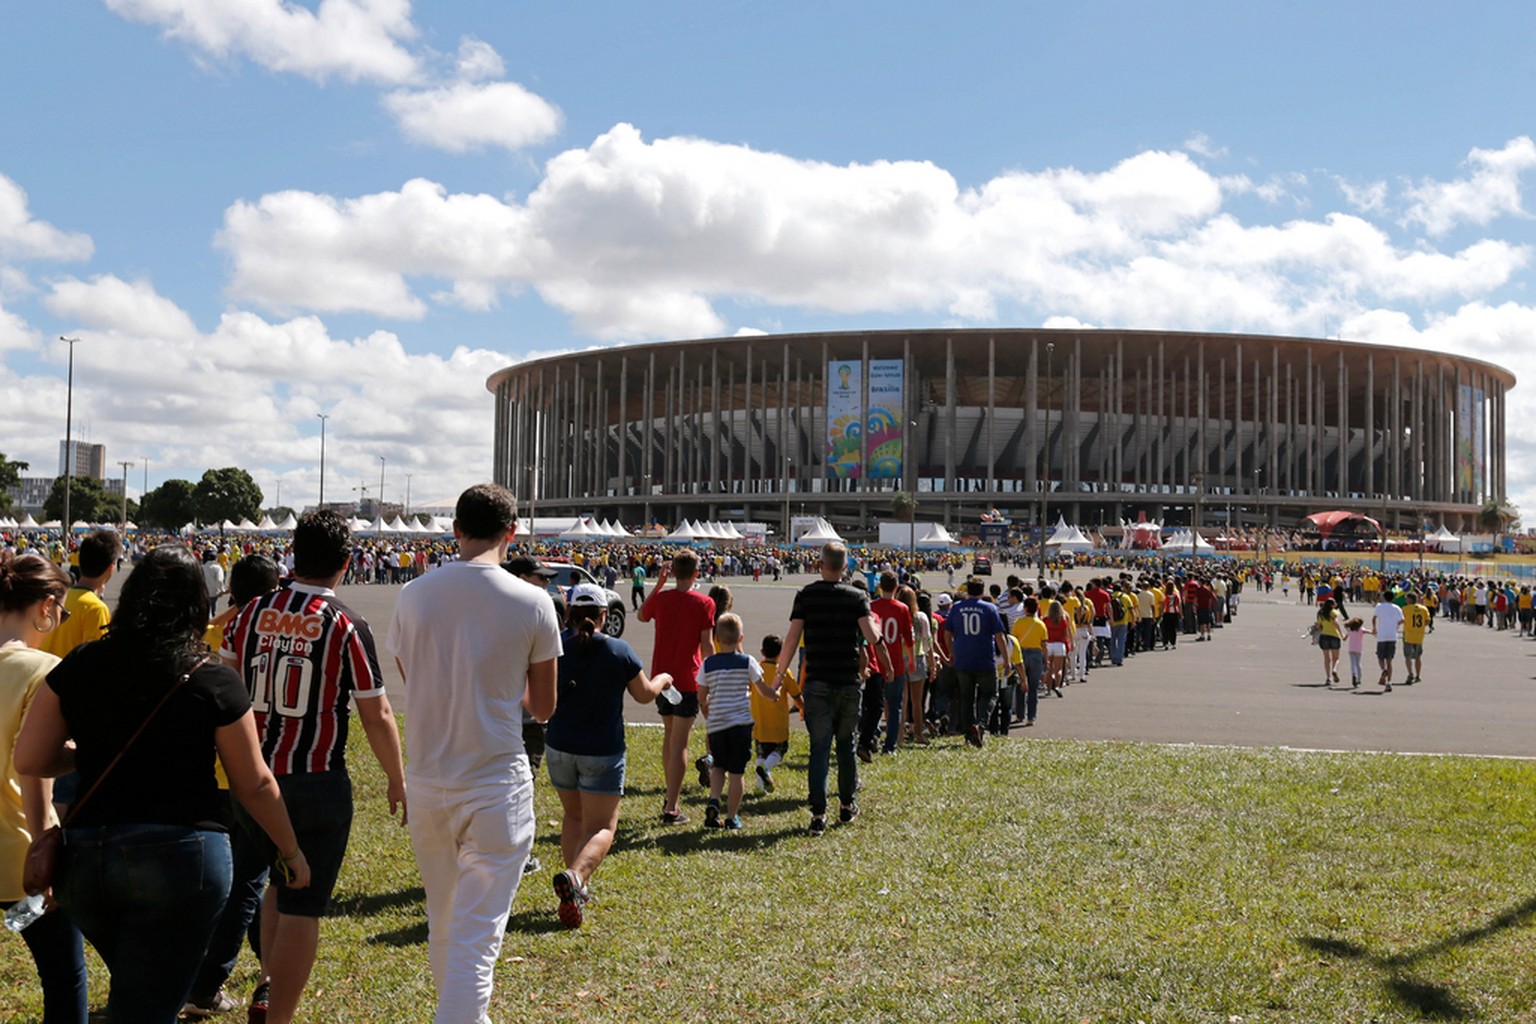 Auch wenn es um nichts mehr geht: Für das Spiel um Rang 3 pilgern die Fans noch einmal ins Estadio Nacional von Brasilia.